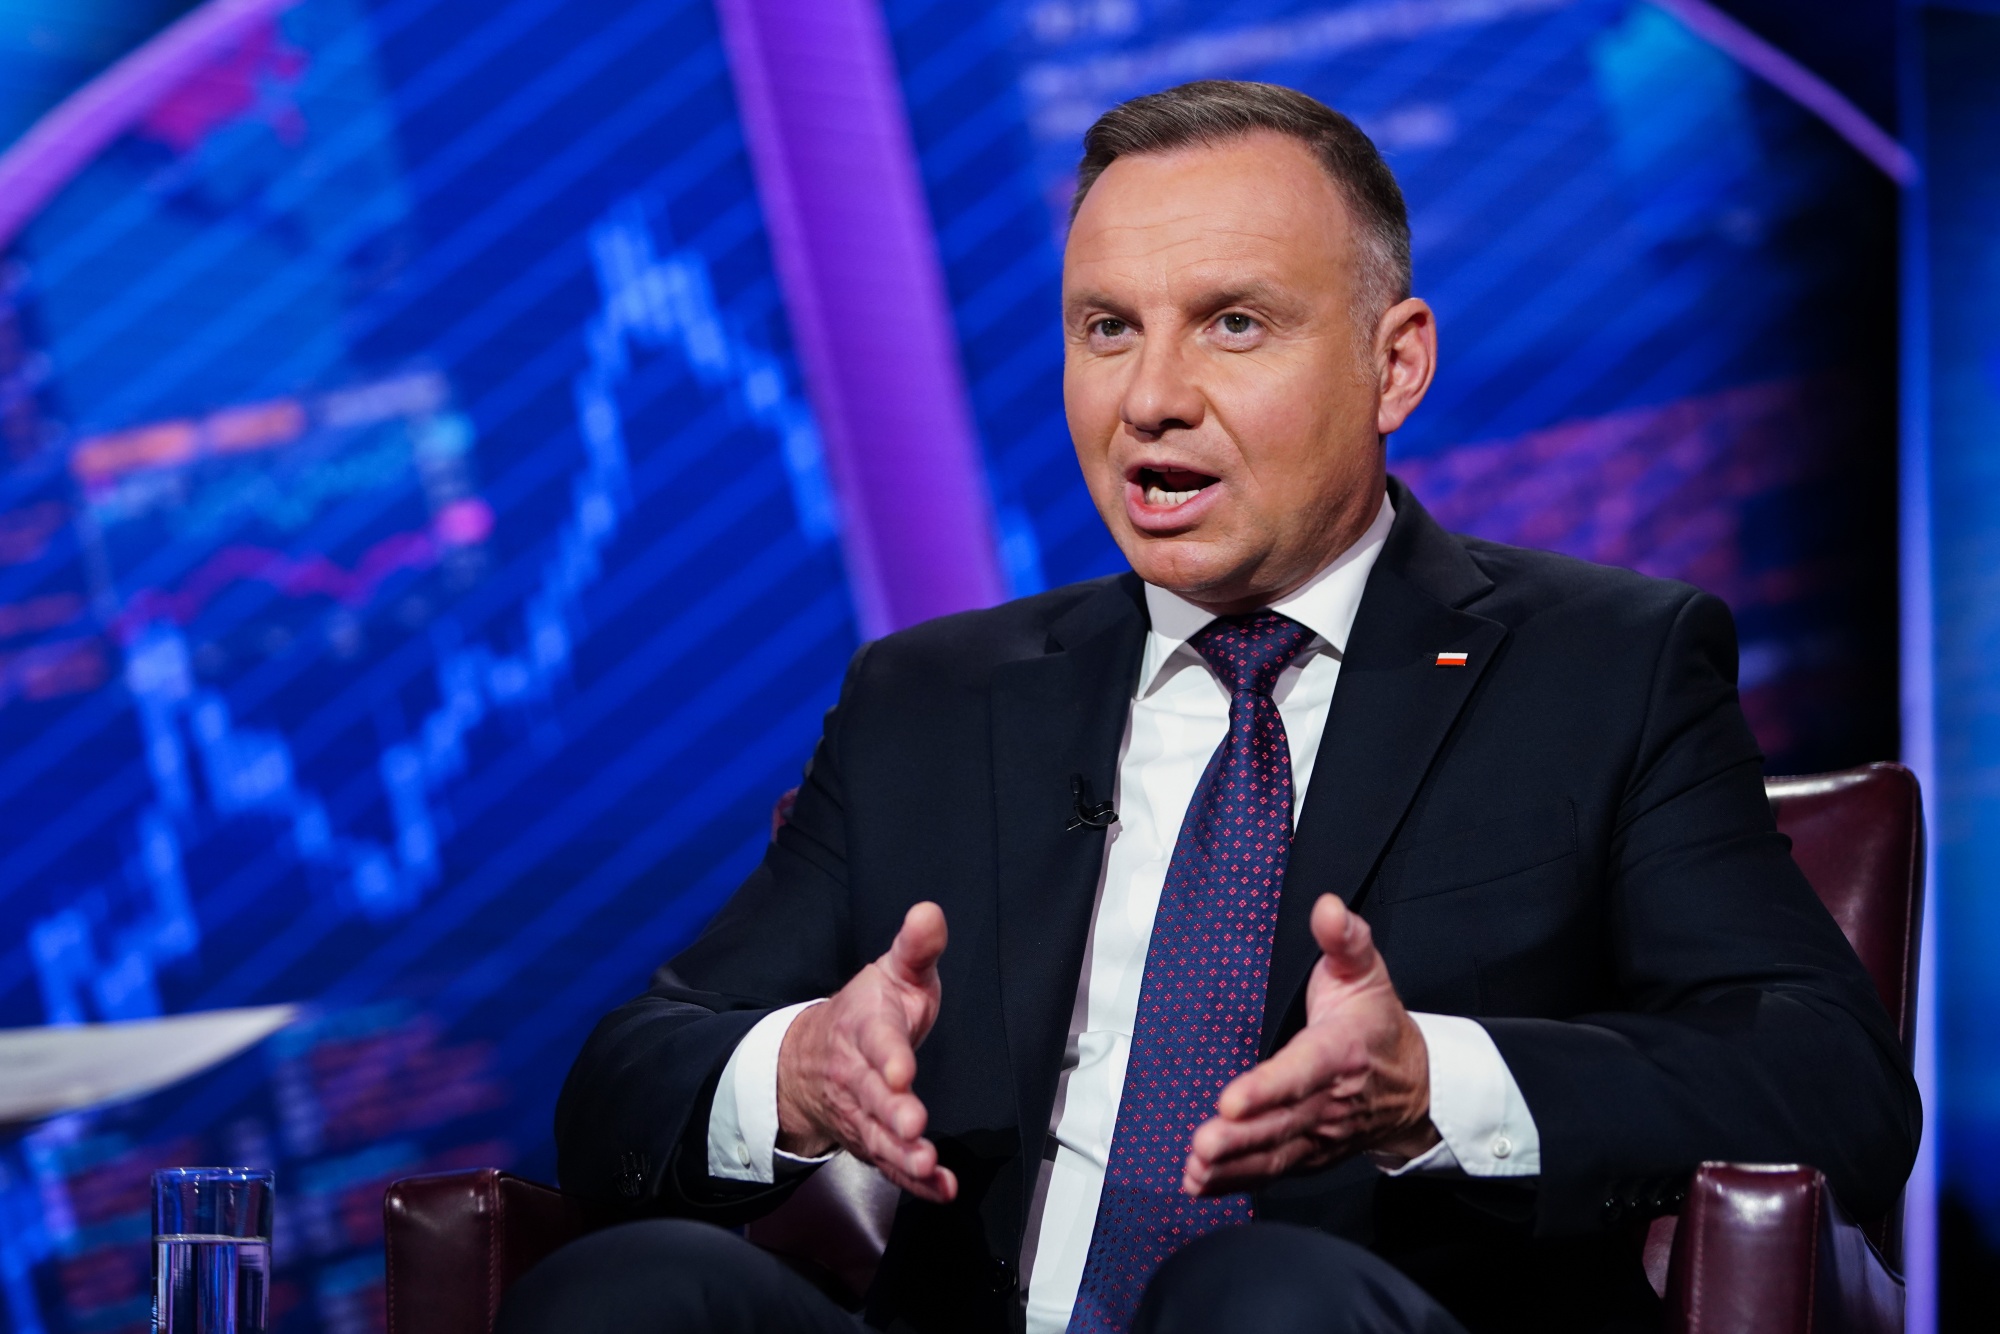 Polish PM tells Ukraine's Zelenskiy 'never to insult Poles again